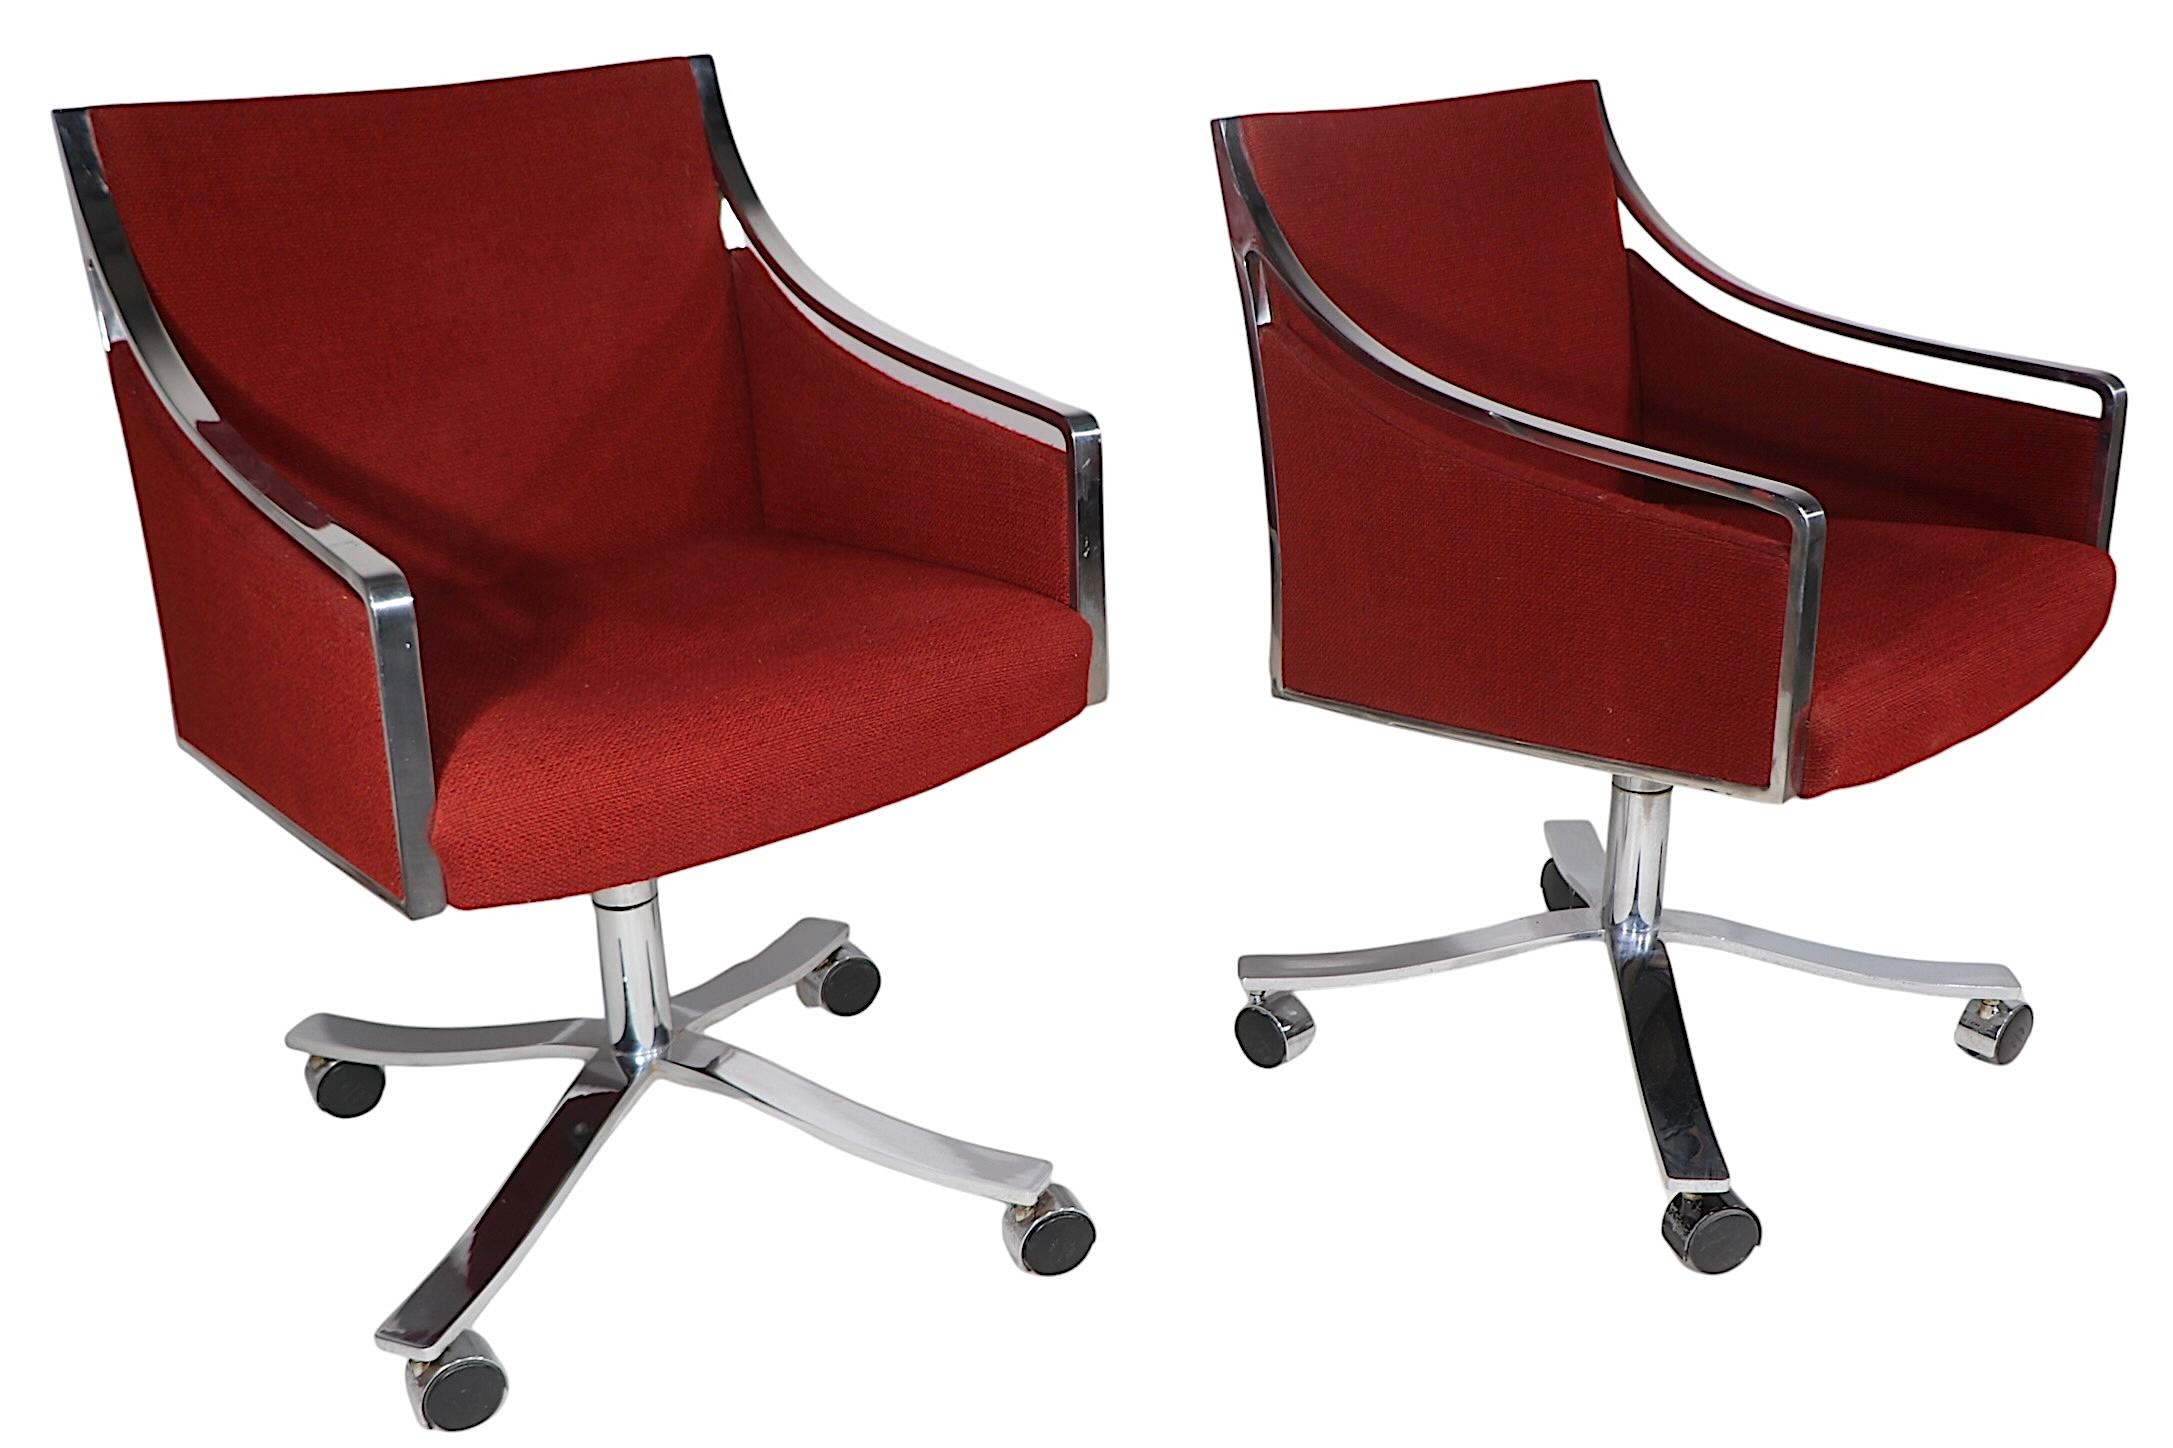 Chaises de bureau pivotantes haut de gamme conçues par Bert England pour Stow Davis, vers les années 1970. Les chaises sont dotées d'une lourde armature, d'une base et de pieds en acier brillant, avec des dossiers et des sièges en tissu d'origine.